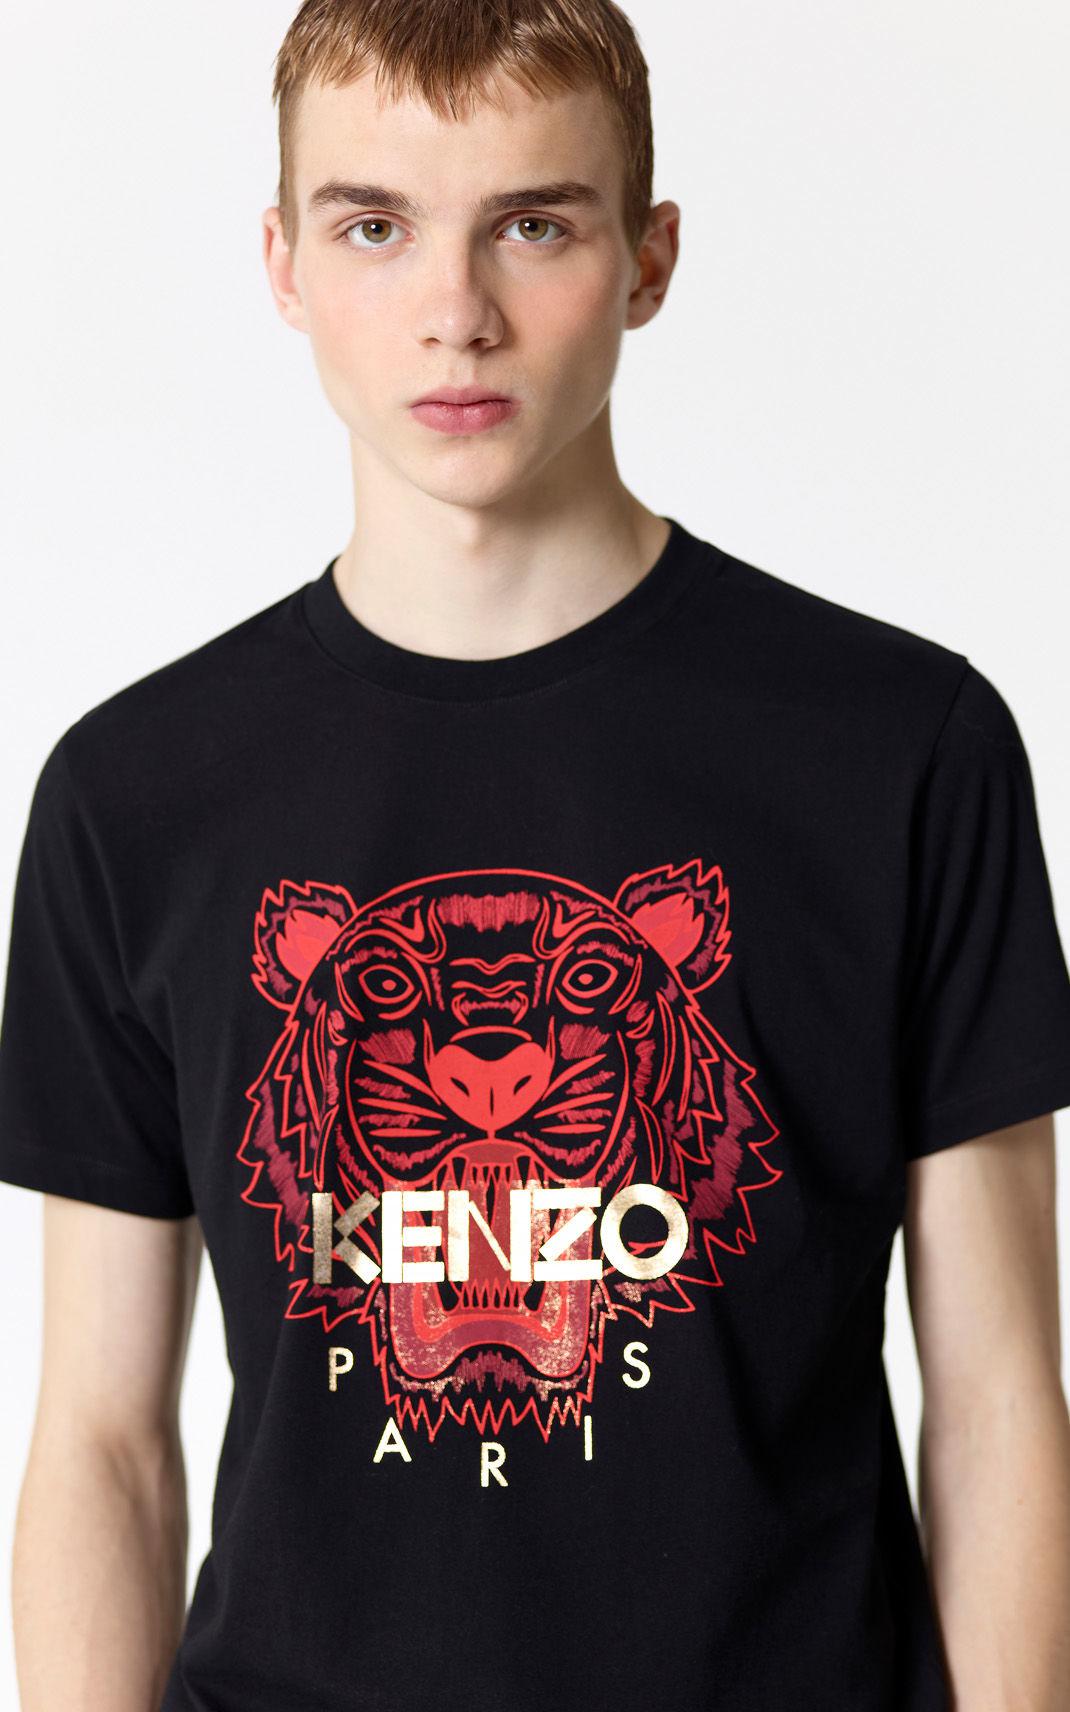 kenzo chinese new year t shirt